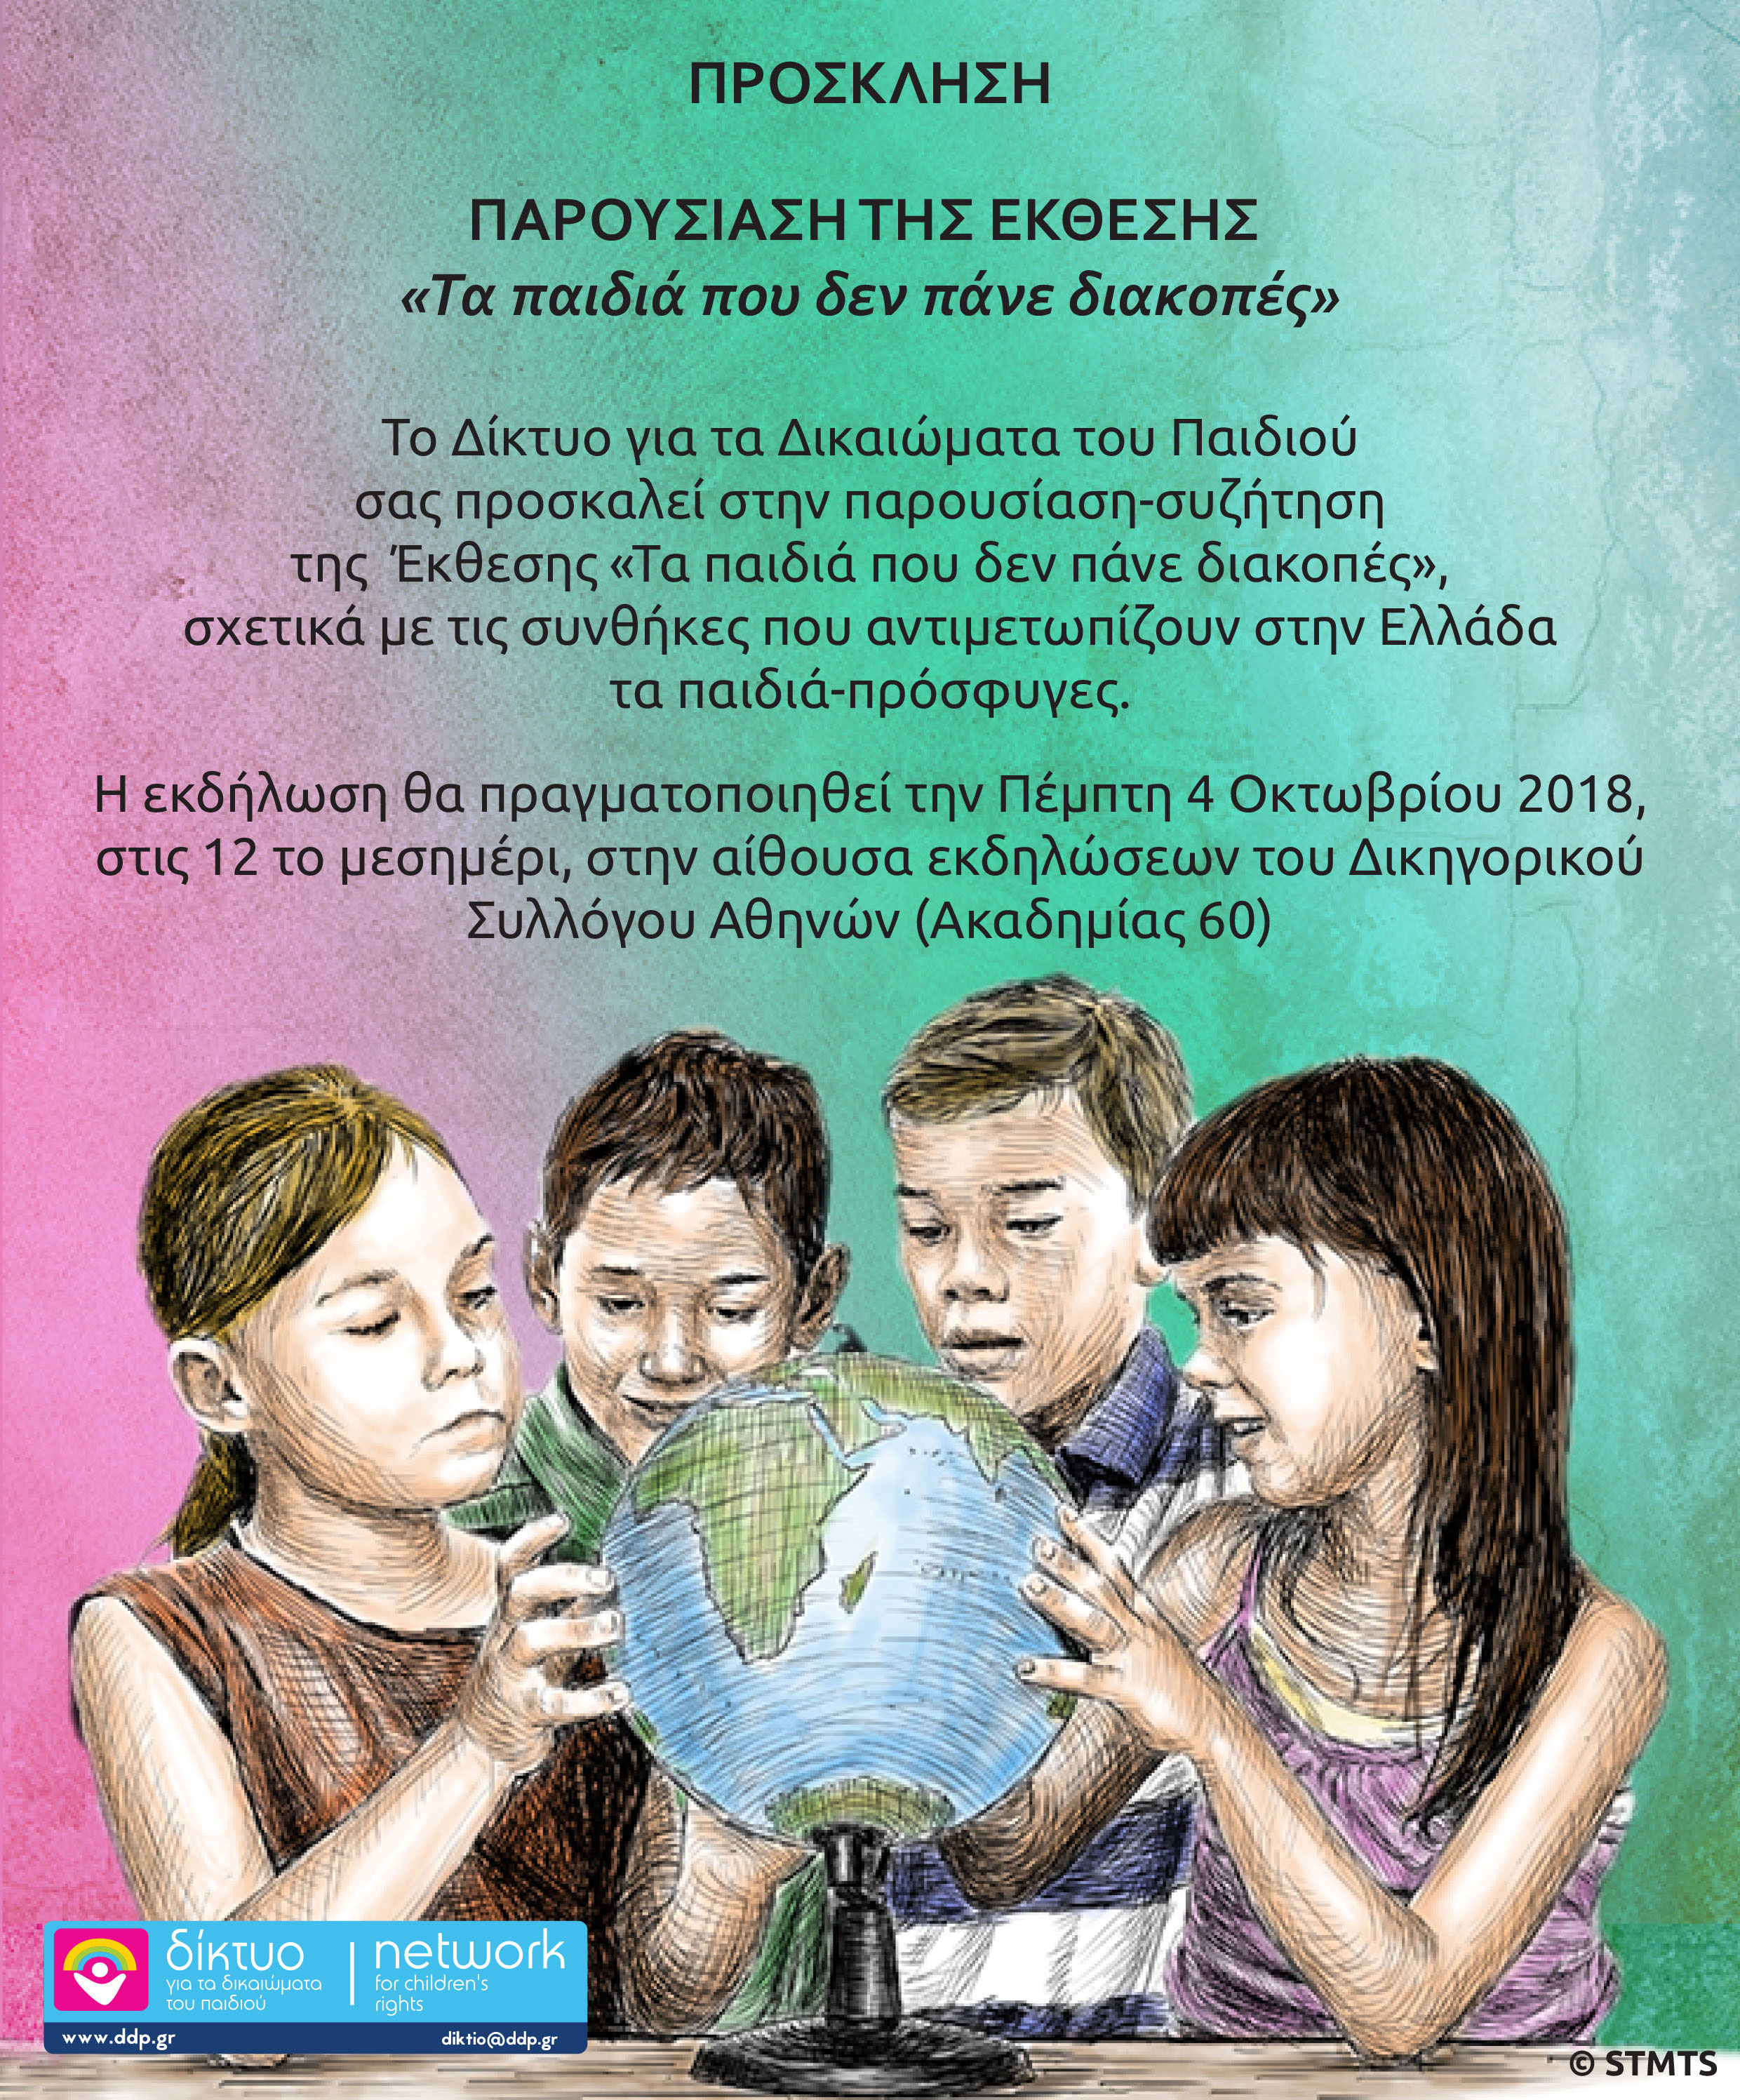 Παρουσίαση της έκθεσης “Τα παιδιά που δεν πάνε διακοπές” του Δικτύου για τα Δικαιώματα του Παιδιού, στον Δικηγορικό Σύλλογο Αθηνών 🗓